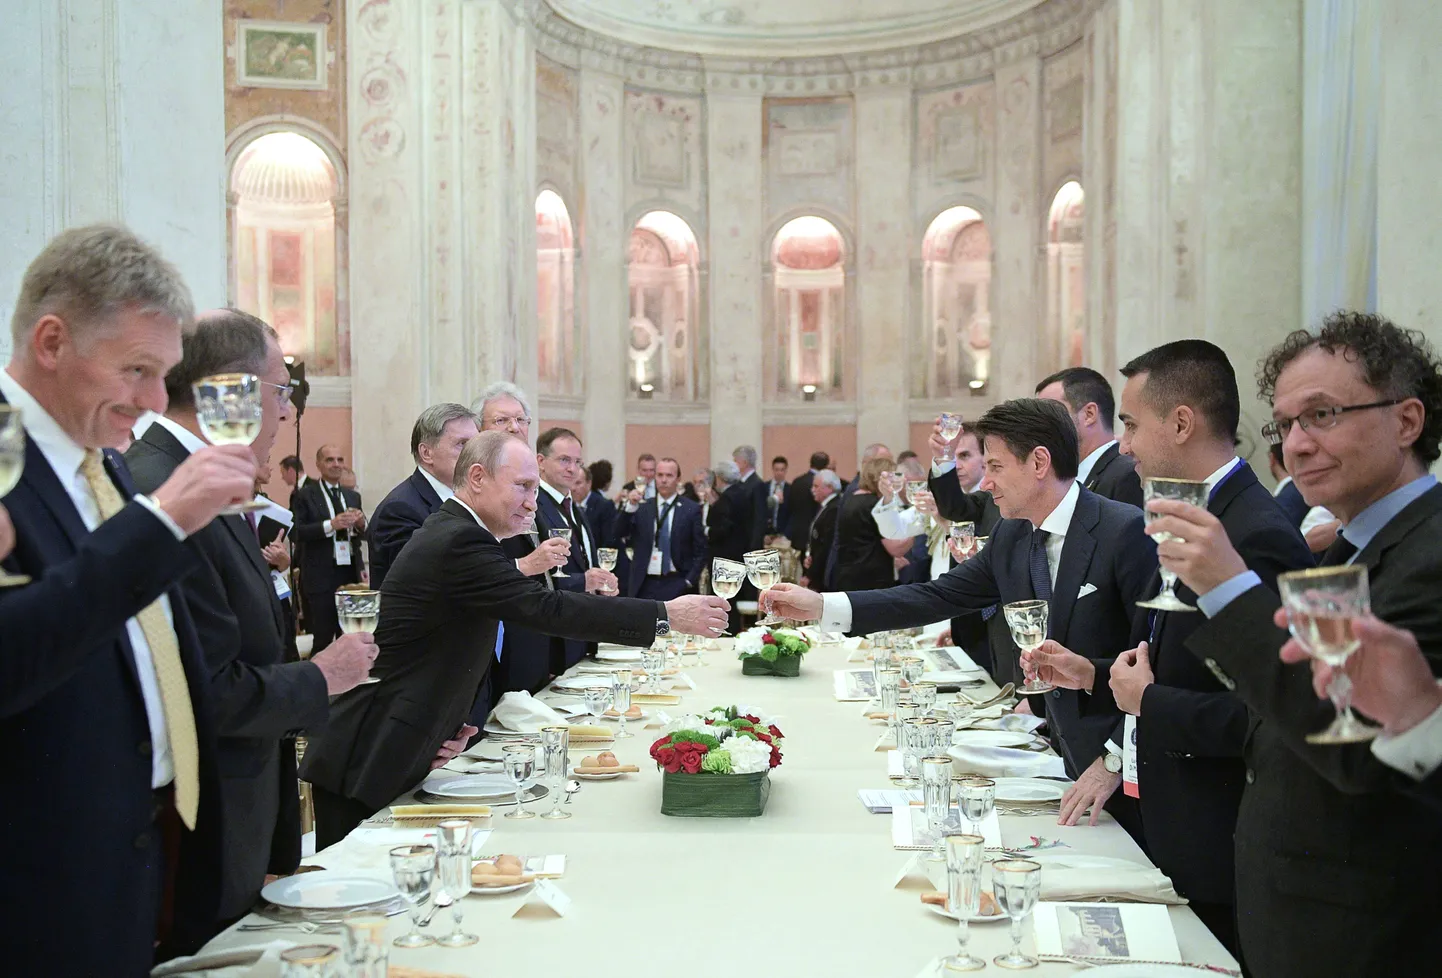 Vene presidendi Vladimir Putini juulikuisel Itaalia visiidil viibis pidulikul õhtusöögil ka väidetavalt Liigale Vene raha taotlenud Gianluca Savoini.